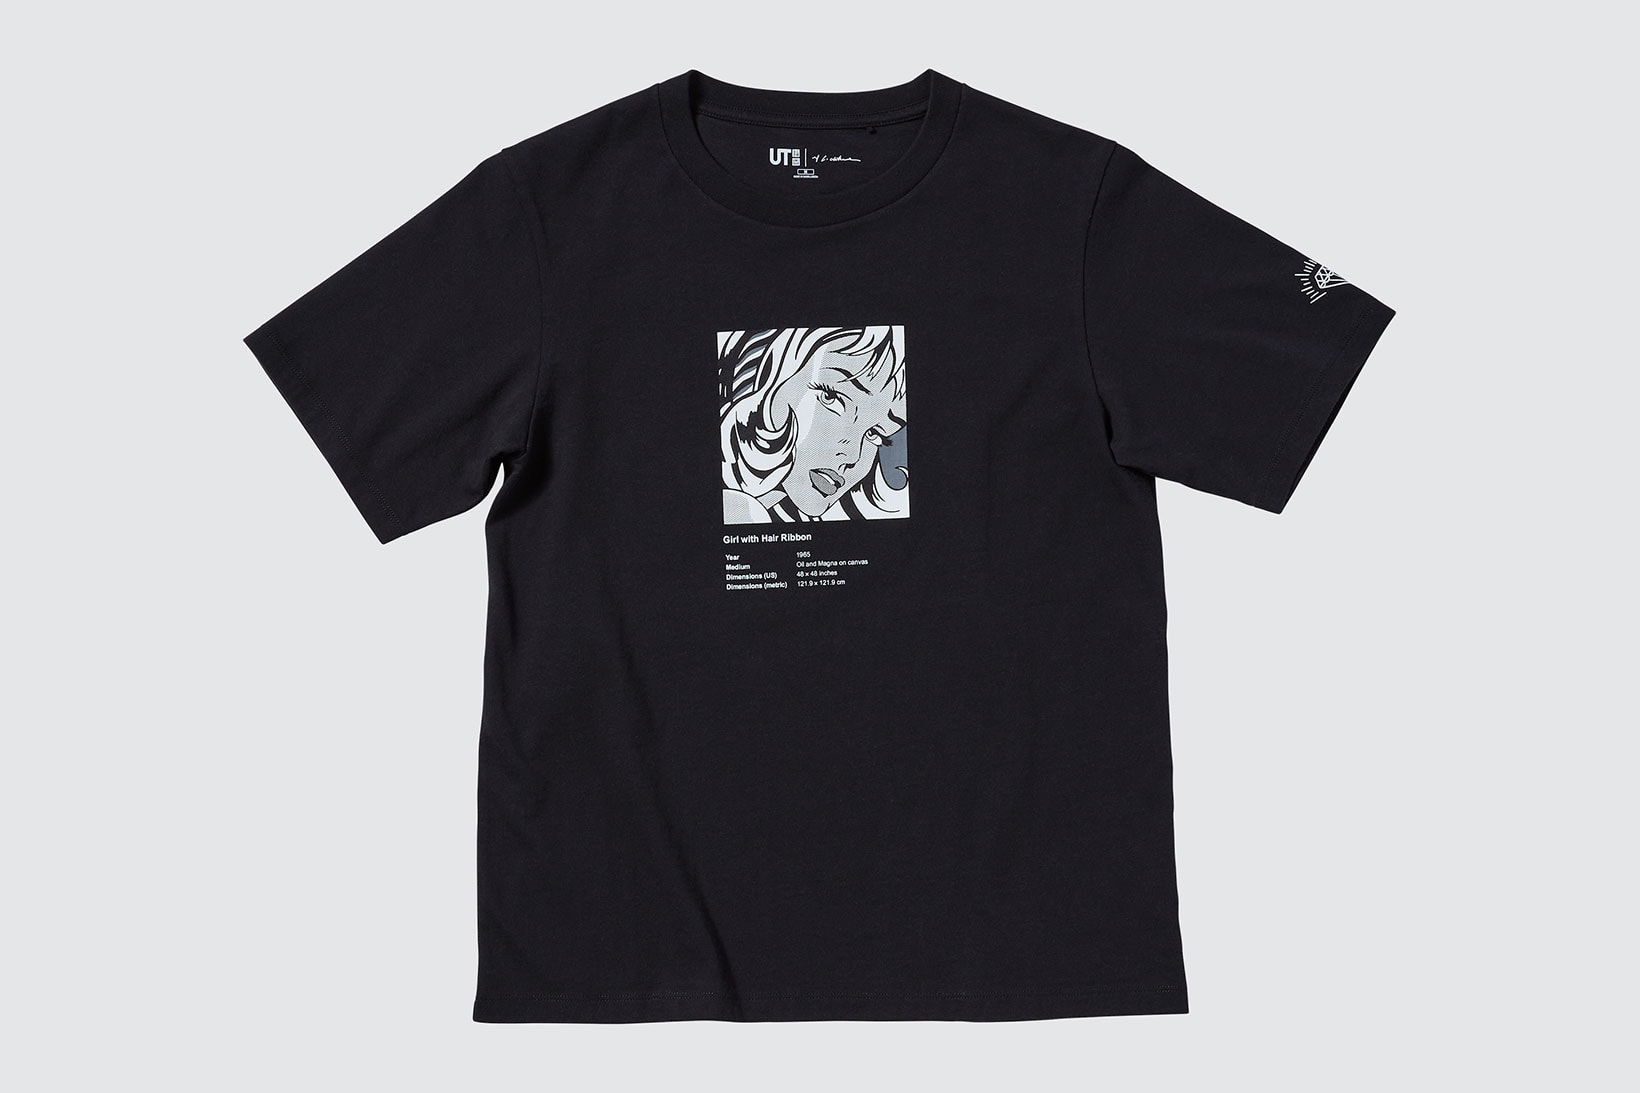 Roy Lichtenstein x UNIQLO UT T-Shirt Collab Info